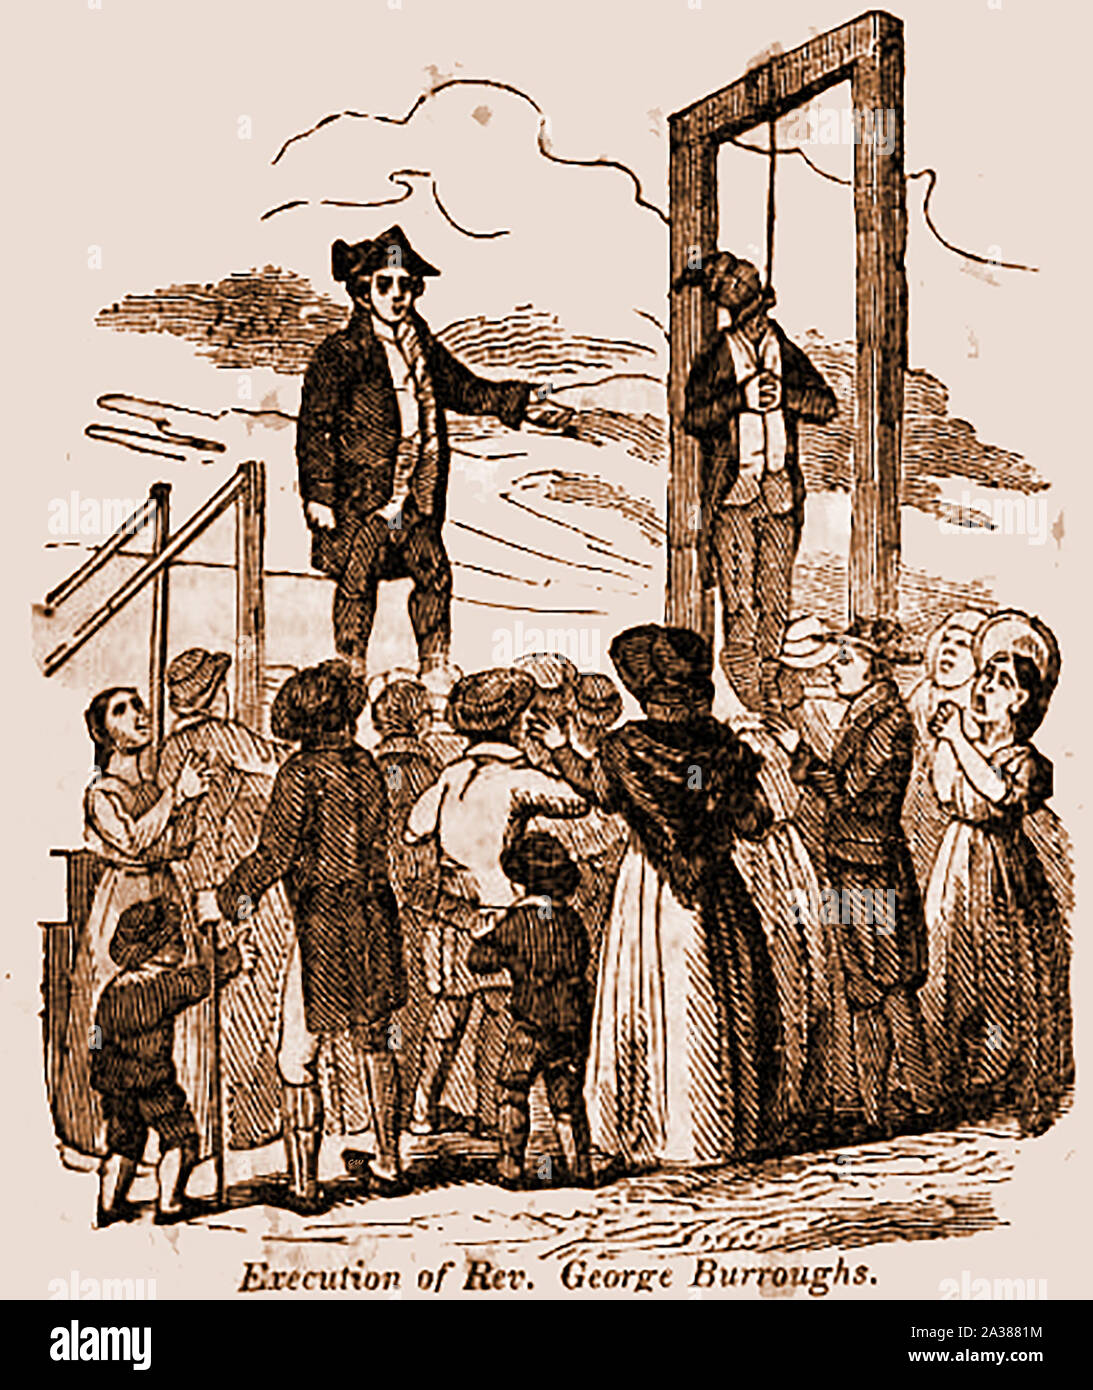 Procès des sorcières de Salem - Une gravure ancienne montrant l'exécution de George Burroughs (c1650 - 1692) à Proctor's Ledge,Salem, la seule église ministre exécuté pour sorcellerie au moment de l'essais de sorcières de Salem Banque D'Images